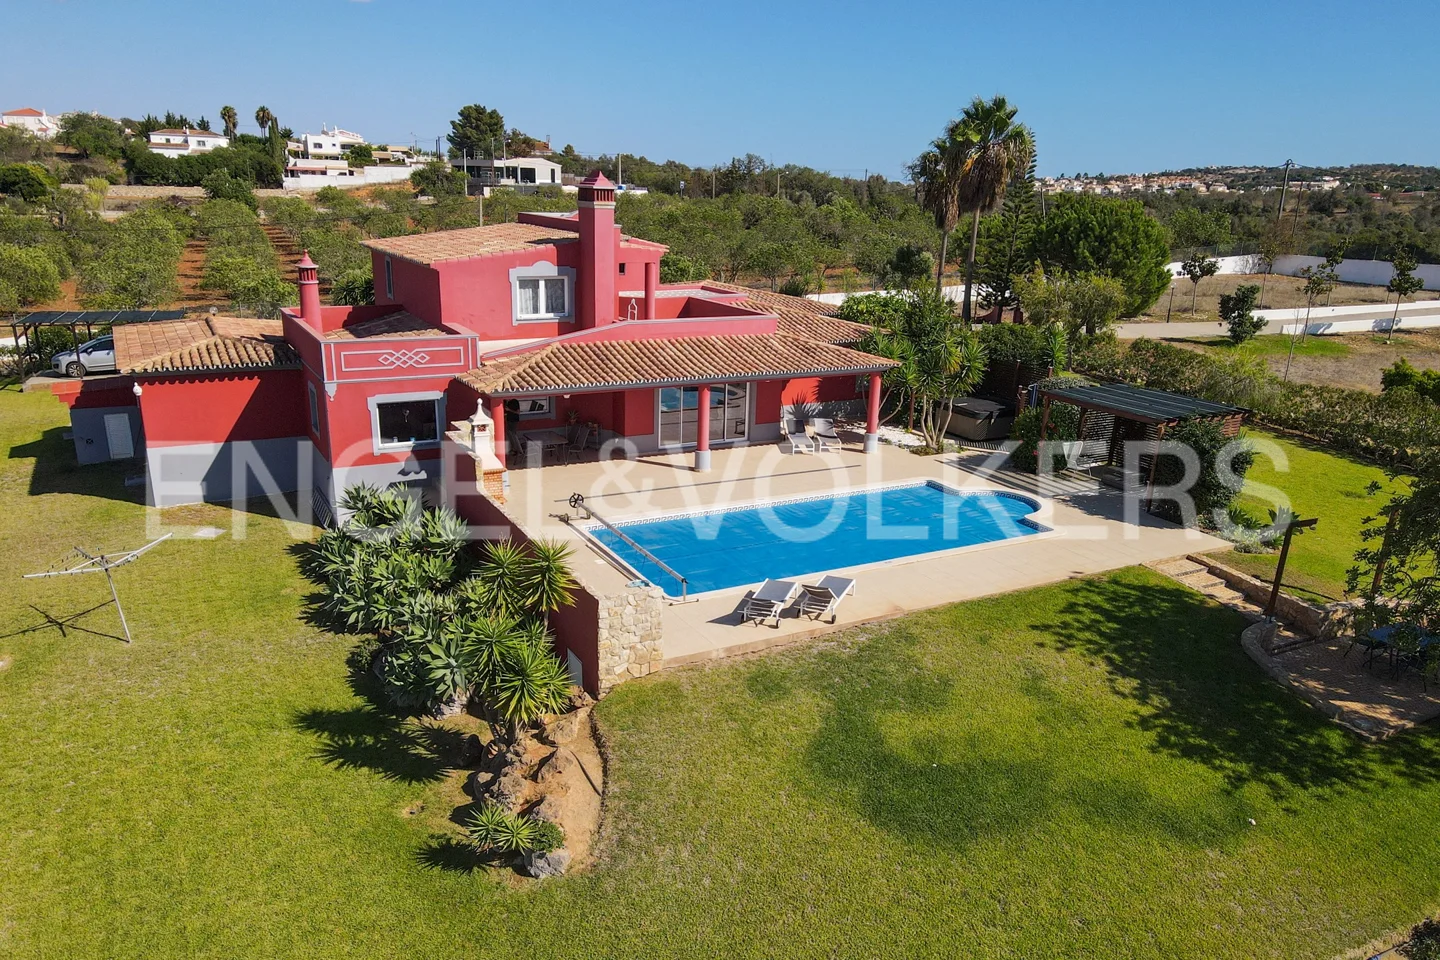 Splendid villa with swimming pool, in a unique location